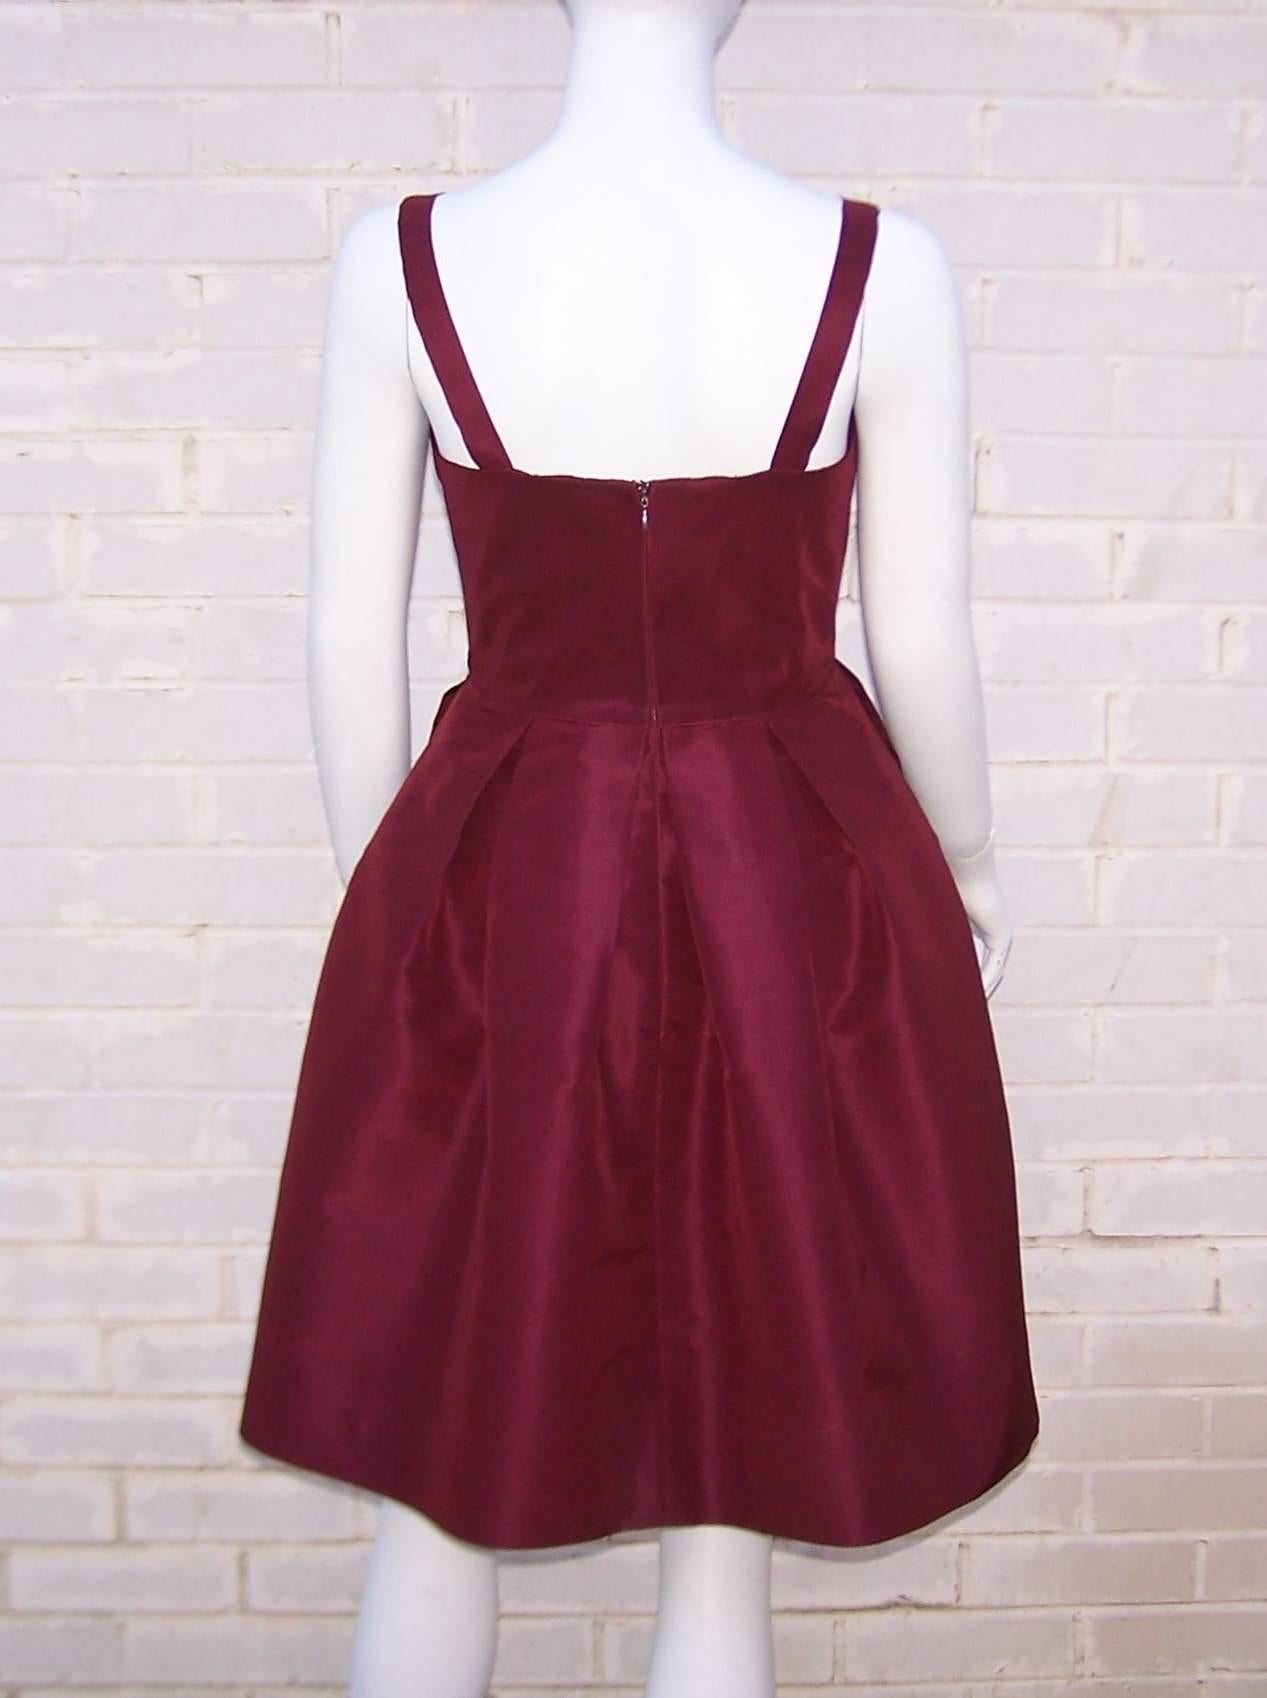 Red Oscar de la Renta Aubergine Silk Taffeta Dress C.2000